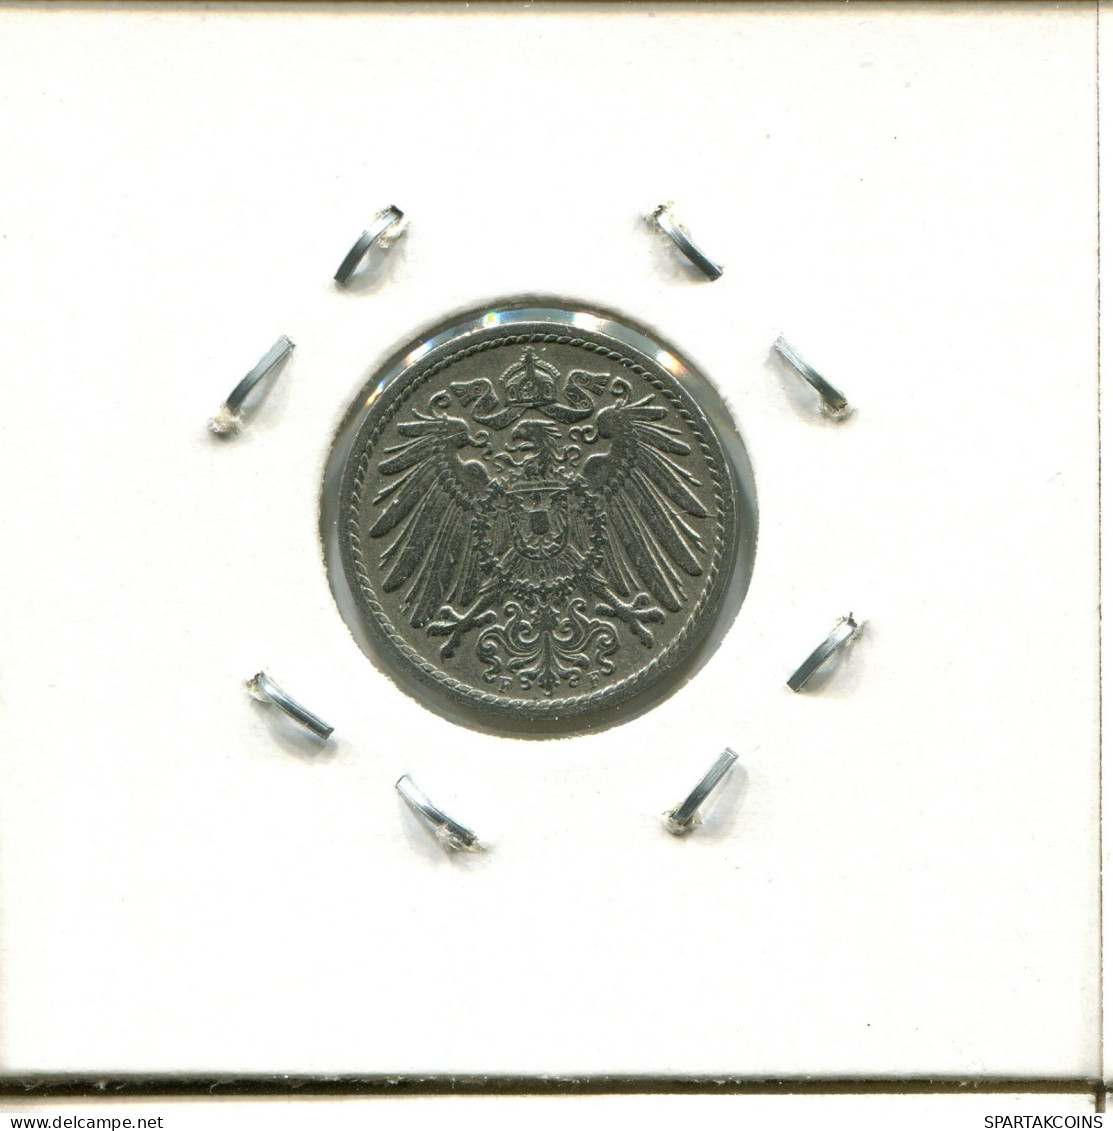 5 PFENNIG 1907 F GERMANY Coin #DA602.2.U.A - 5 Pfennig